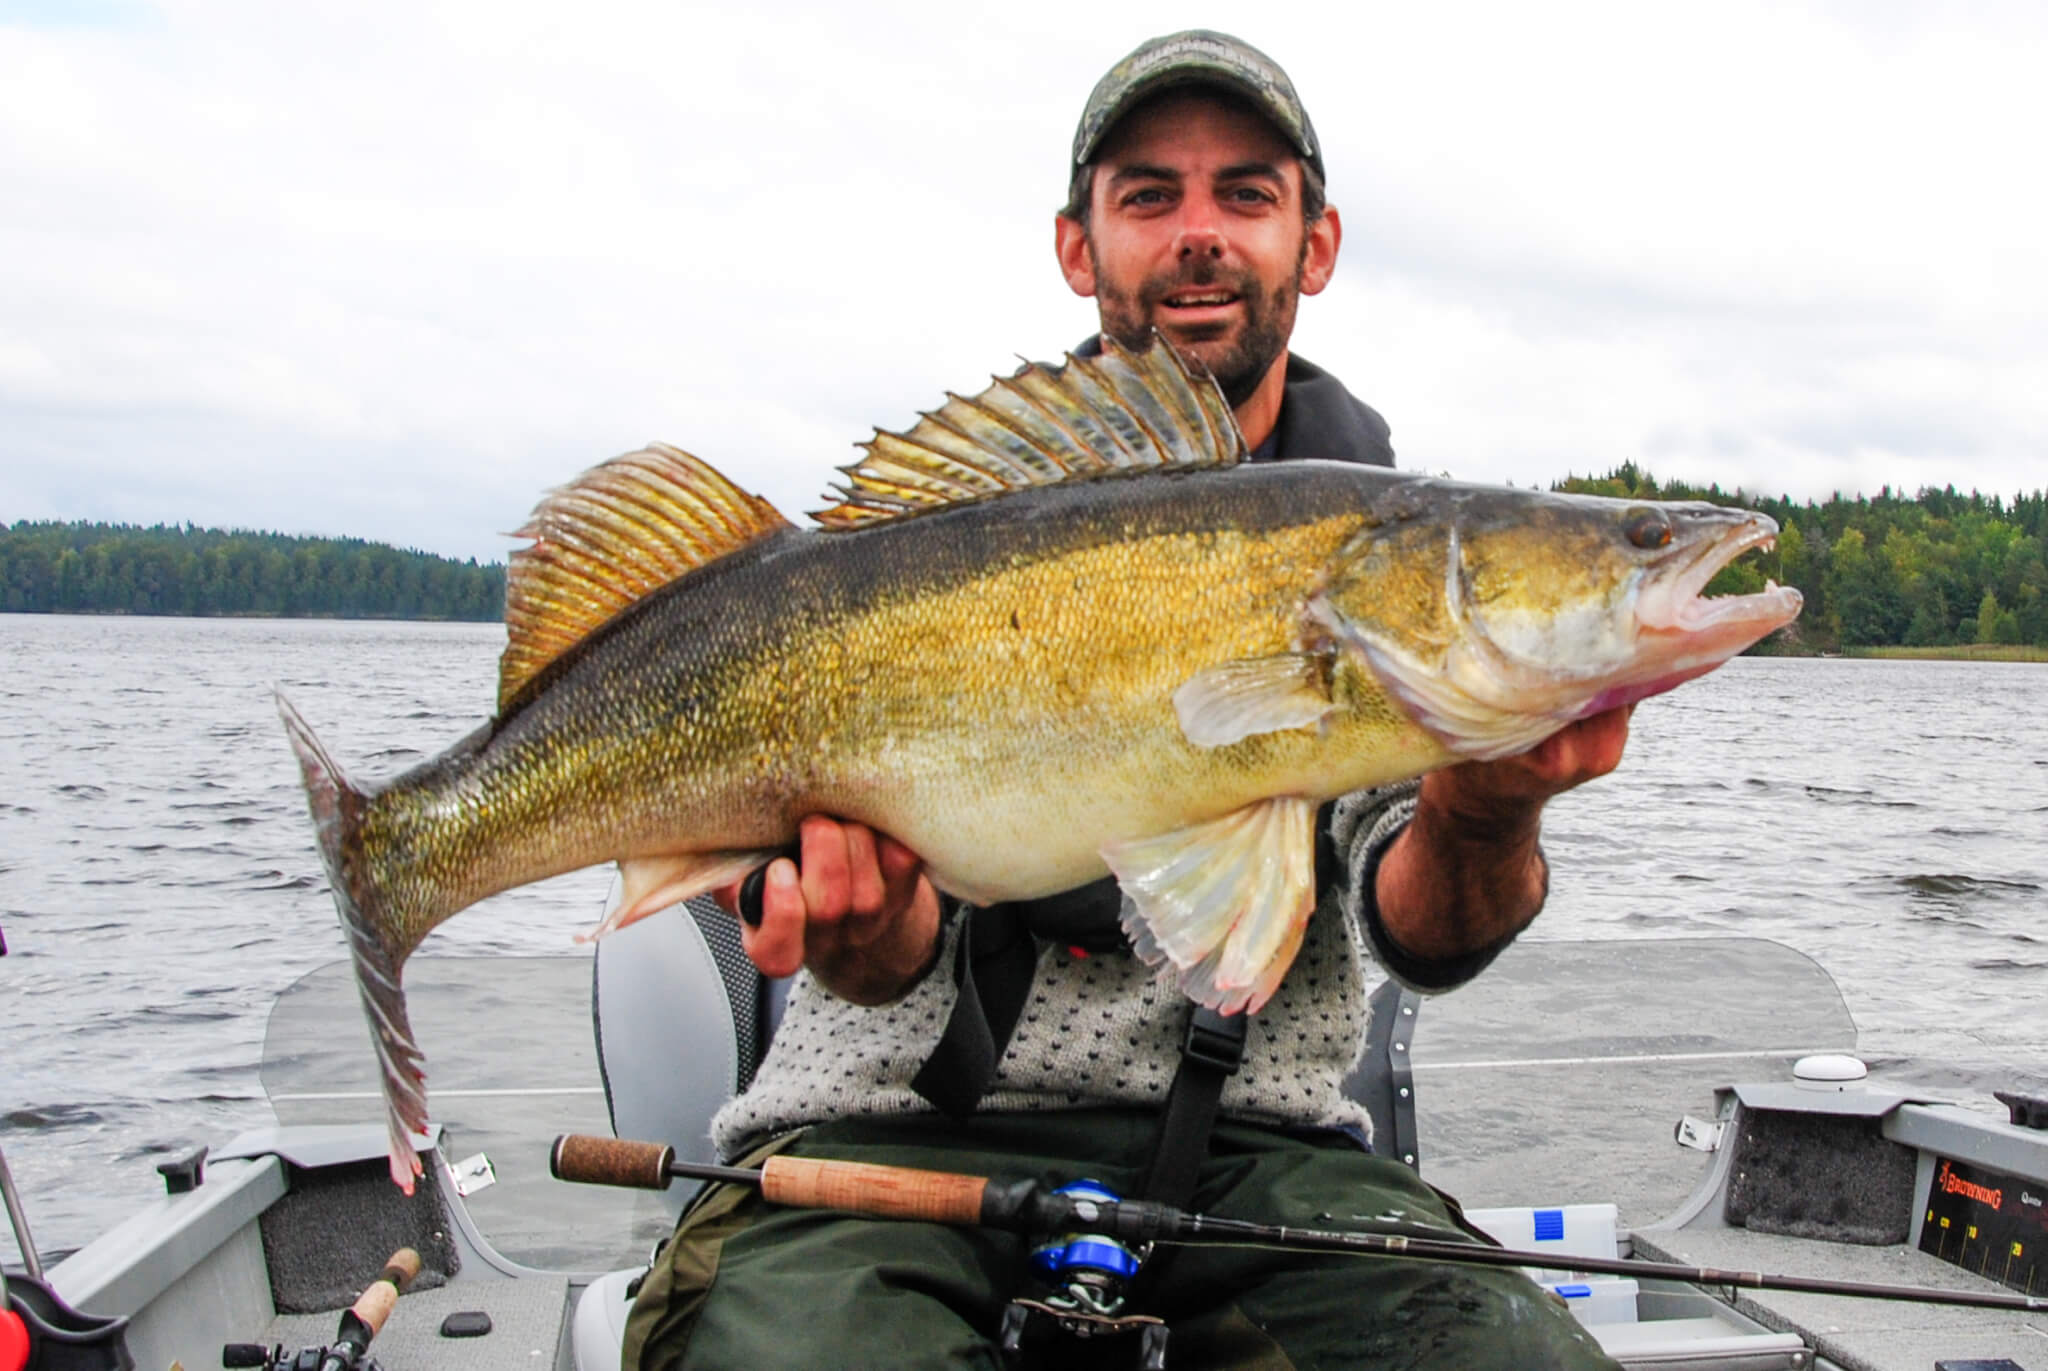 Huge Zander caught Fishing in Sweden.